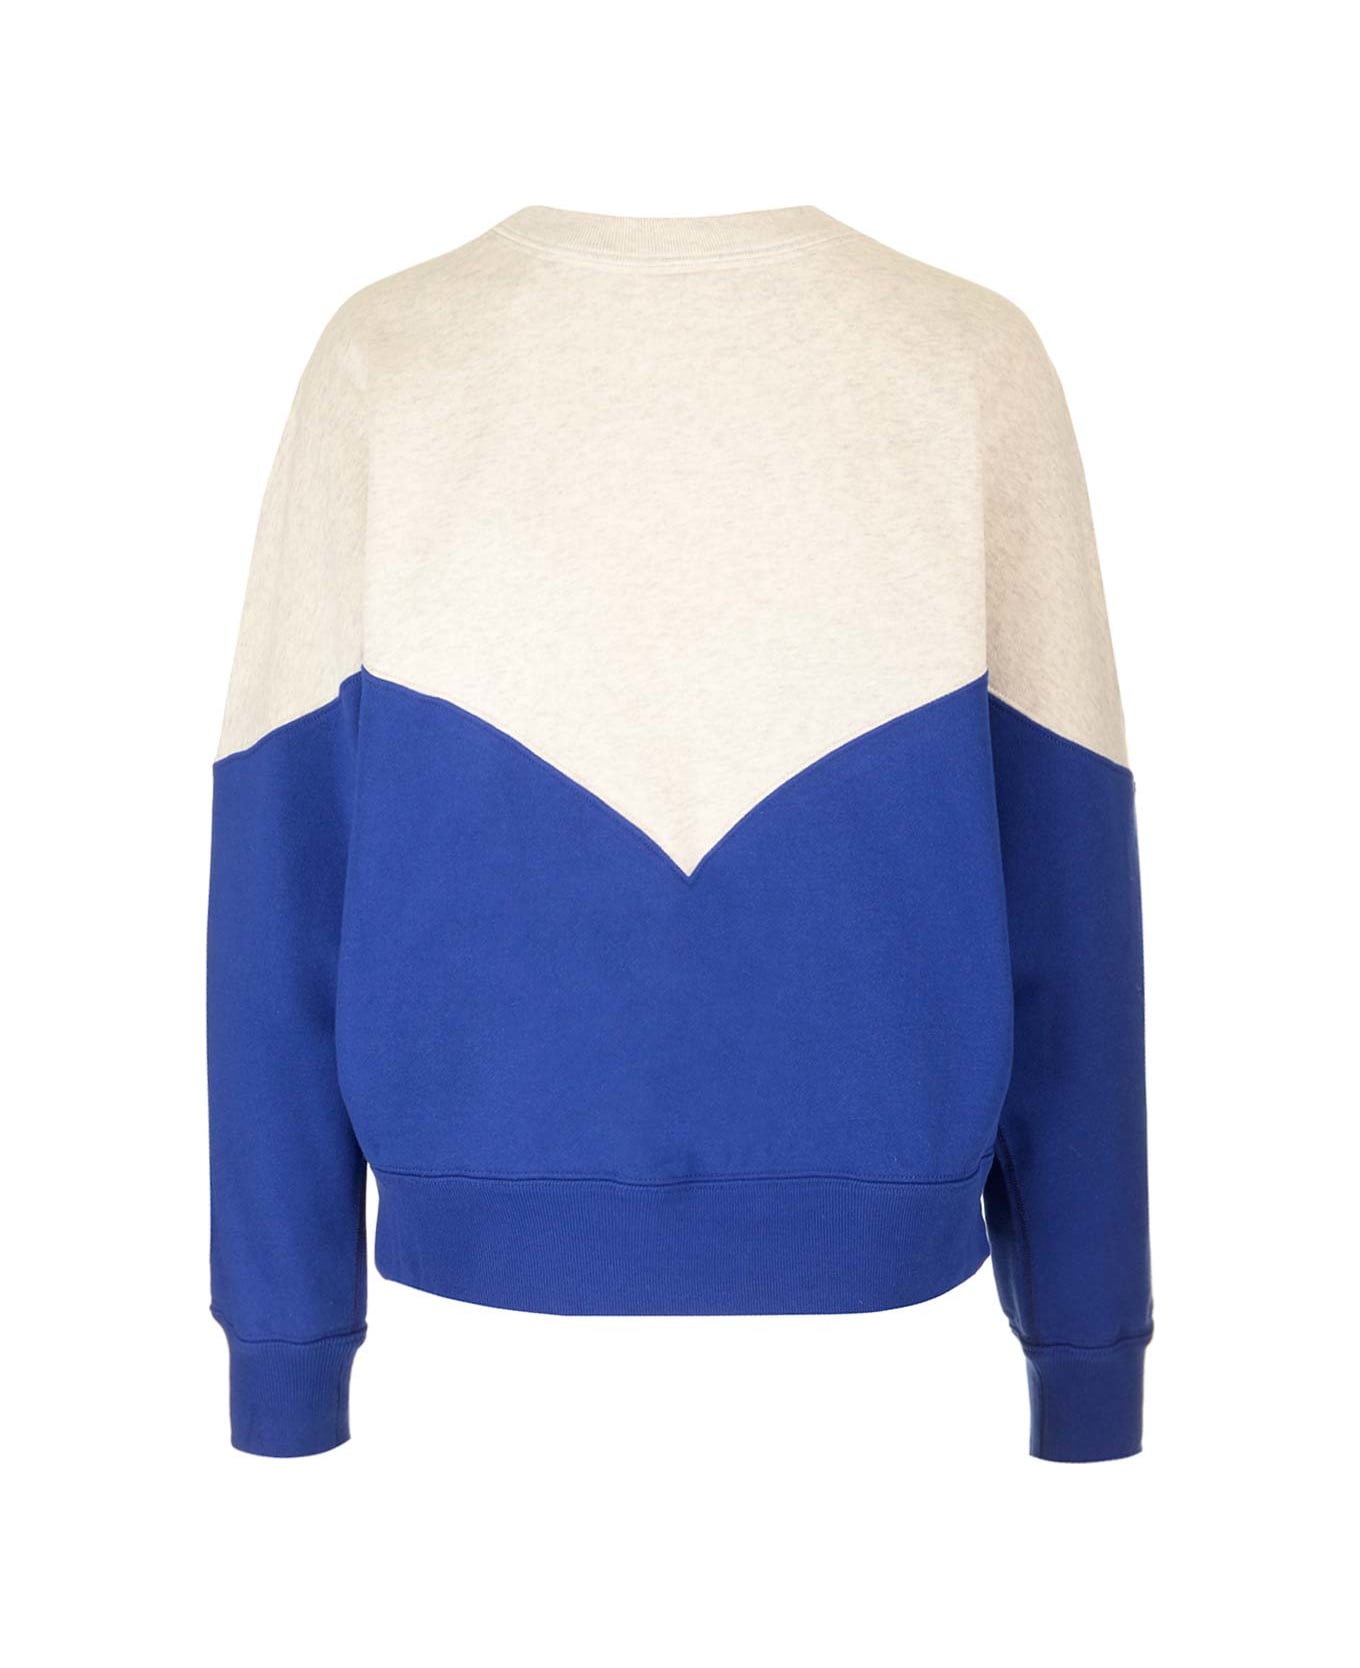 Marant Étoile Houston Sweatshirt - LIGHT BLUE